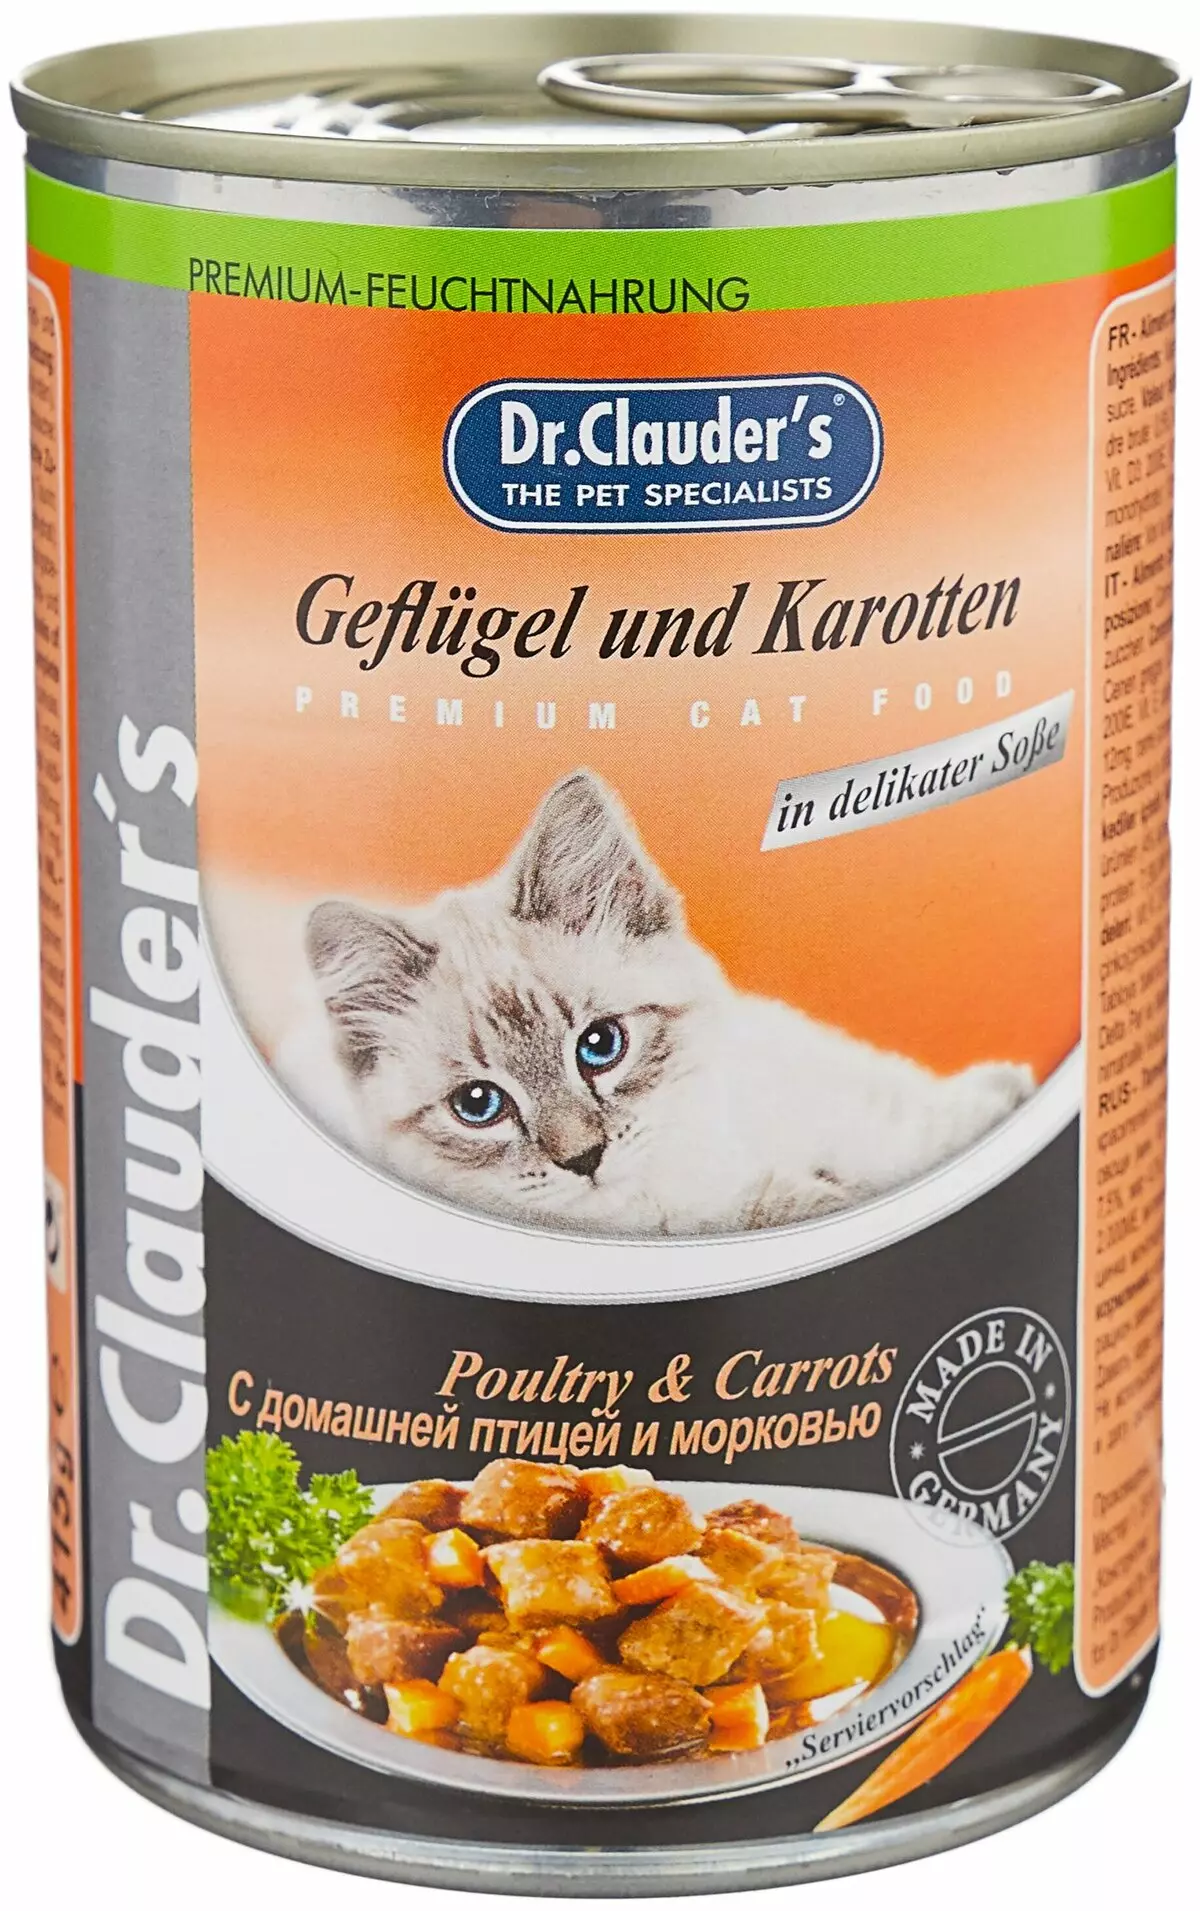 Τροφοδοτήστε το DR. Clauders: Στεγνώστε για γάτες και σκύλους. Φαγητό με κονσερβοποιημένα φαγητά (κονσερβοποιημένα τρόφιμα) και άλλα υγρά προϊόντα 22663_3